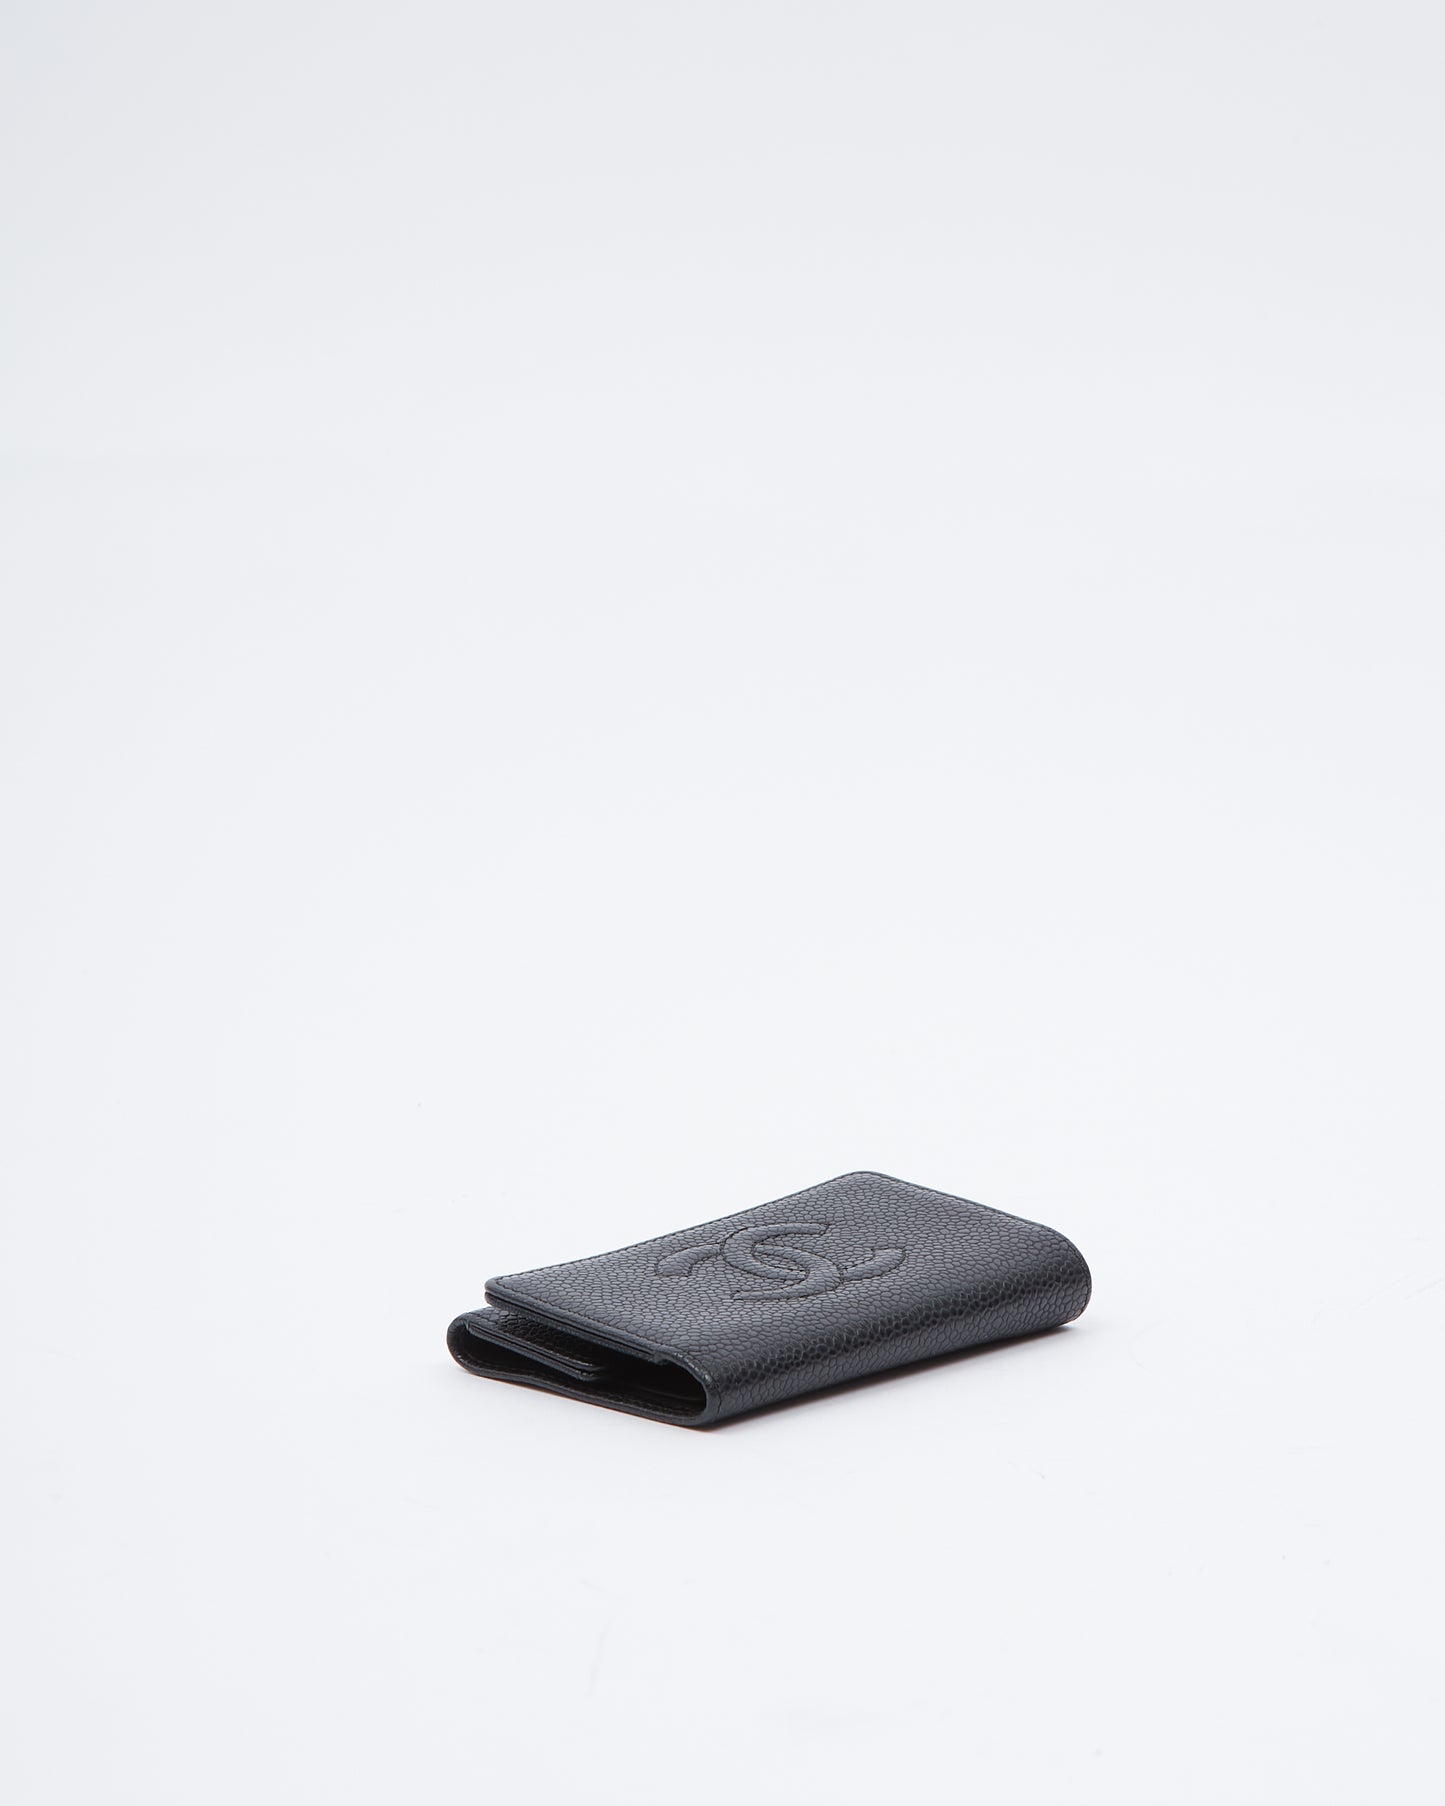 Porte-clés Chanel Black Caviar Timeless CC avec logo imbriqué